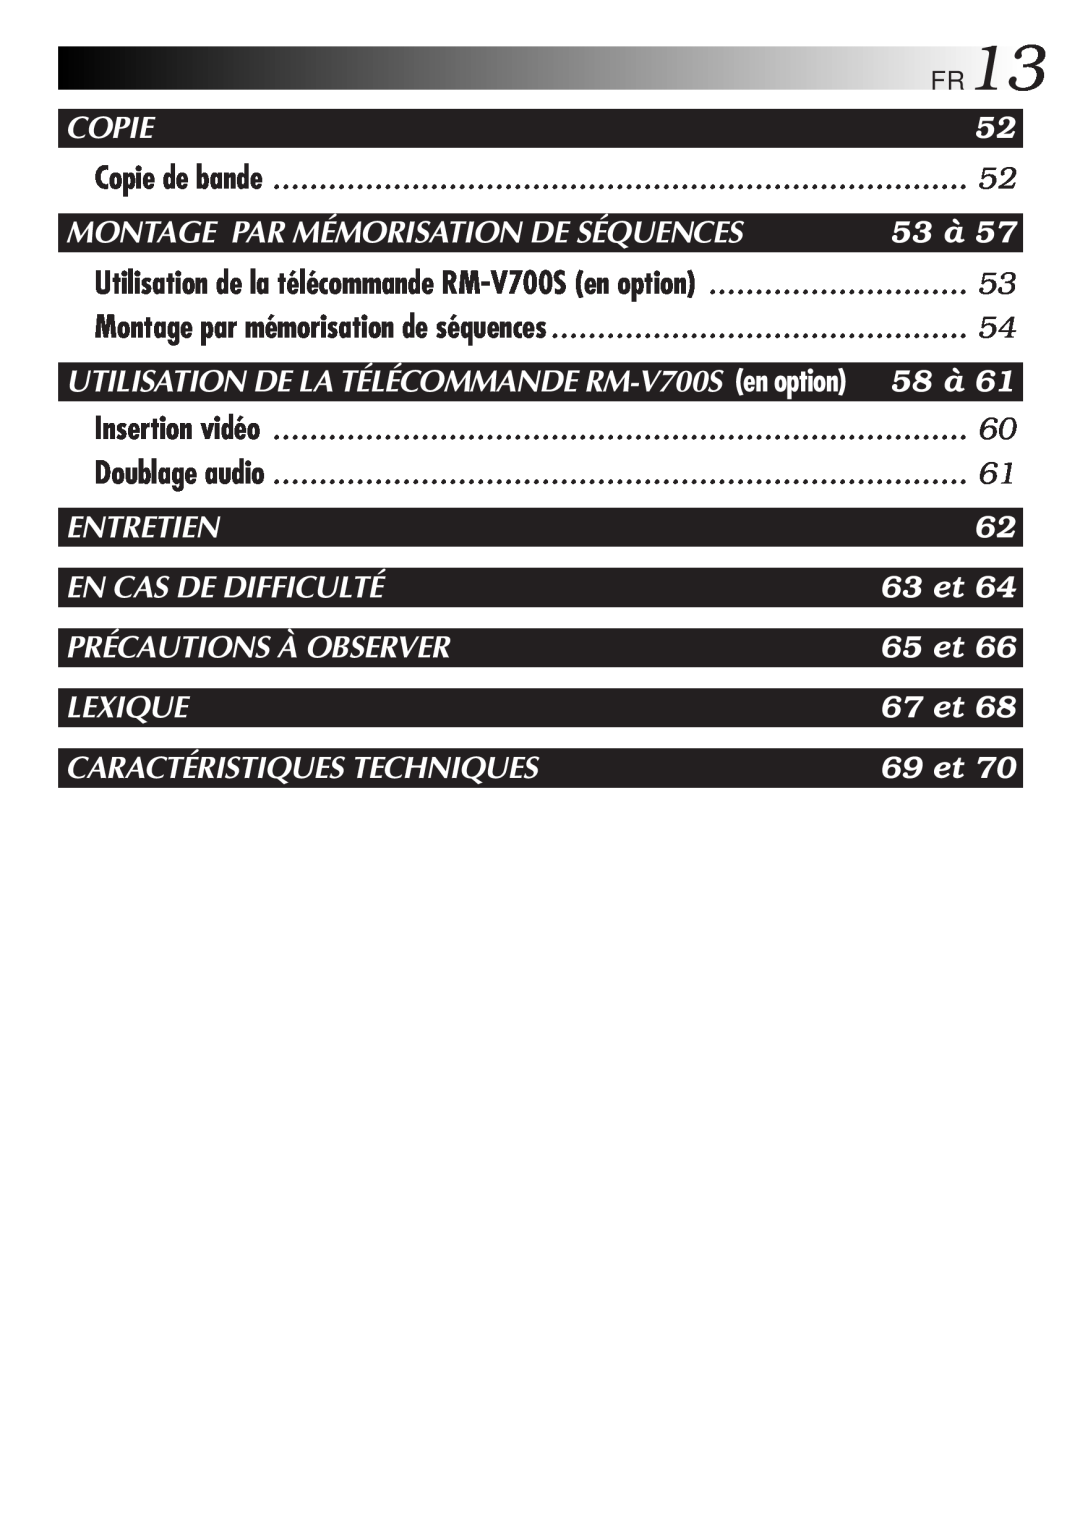 JVC GR-FXM106S Copie, Montage Par Mémorisation De Séquences, 53 à, 58 à, Entretien, En Cas De Difficulté, 63 et, 65 et 